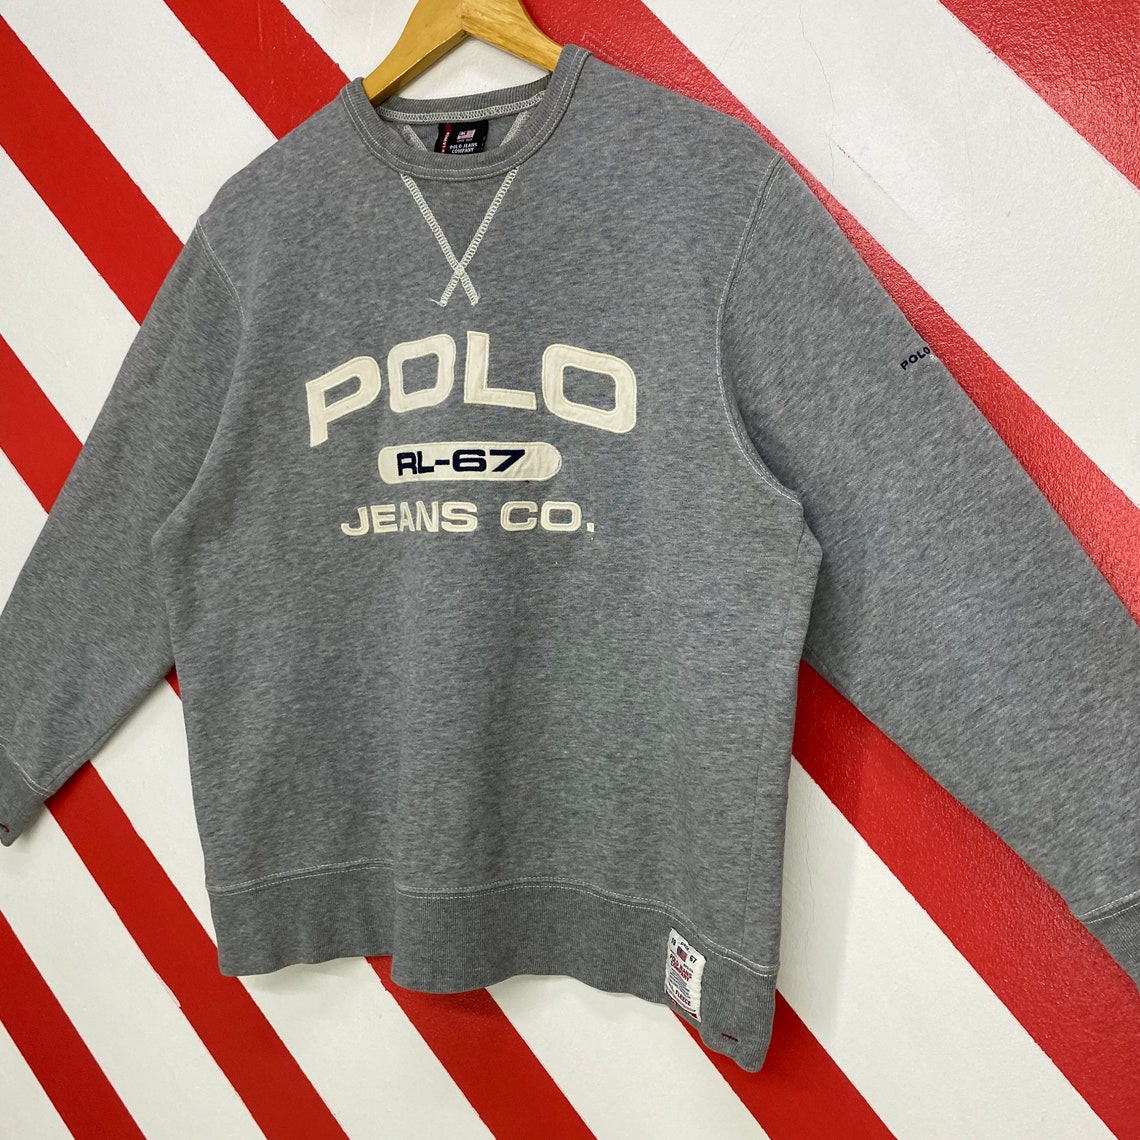 Vintage 90s Polo Ralph Lauren Sweatshirt Polo Ralph Lauren | Etsy